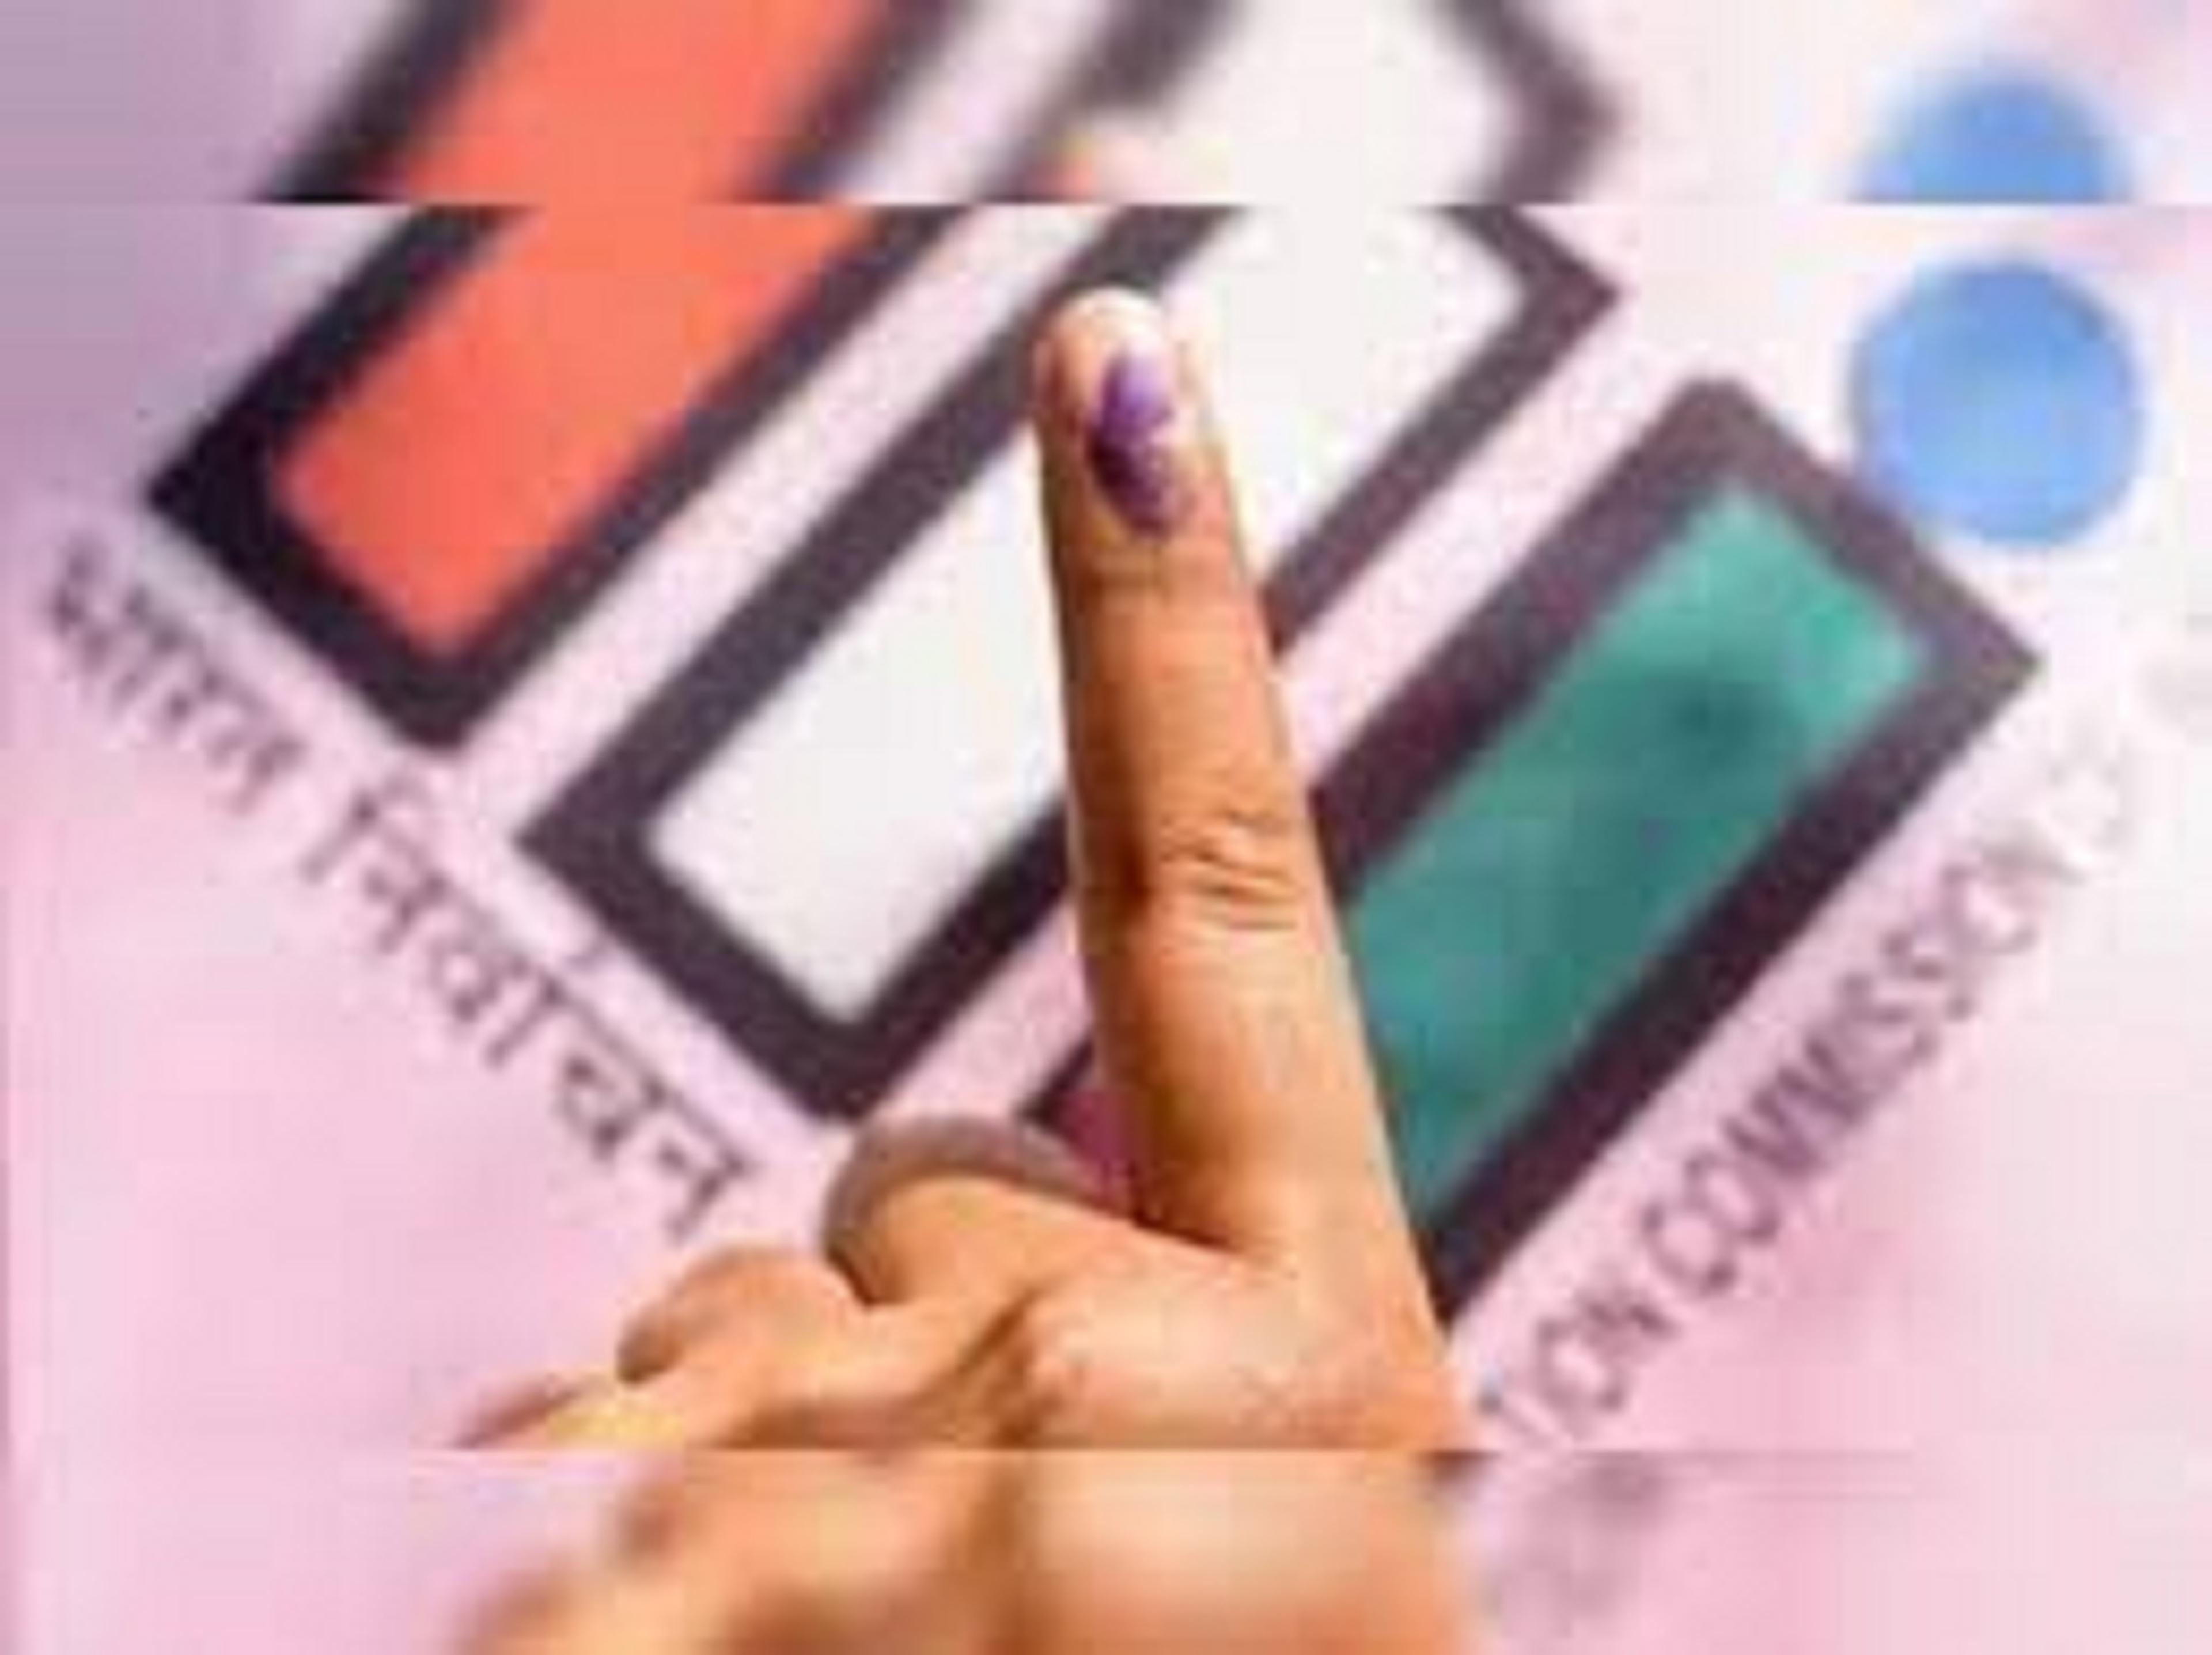 प्रवासियों का राजस्थान कूच, मतदान में हिस्सा लेंगे, उम्मीदवारों ने साधा था
प्रवासियों से संपर्क